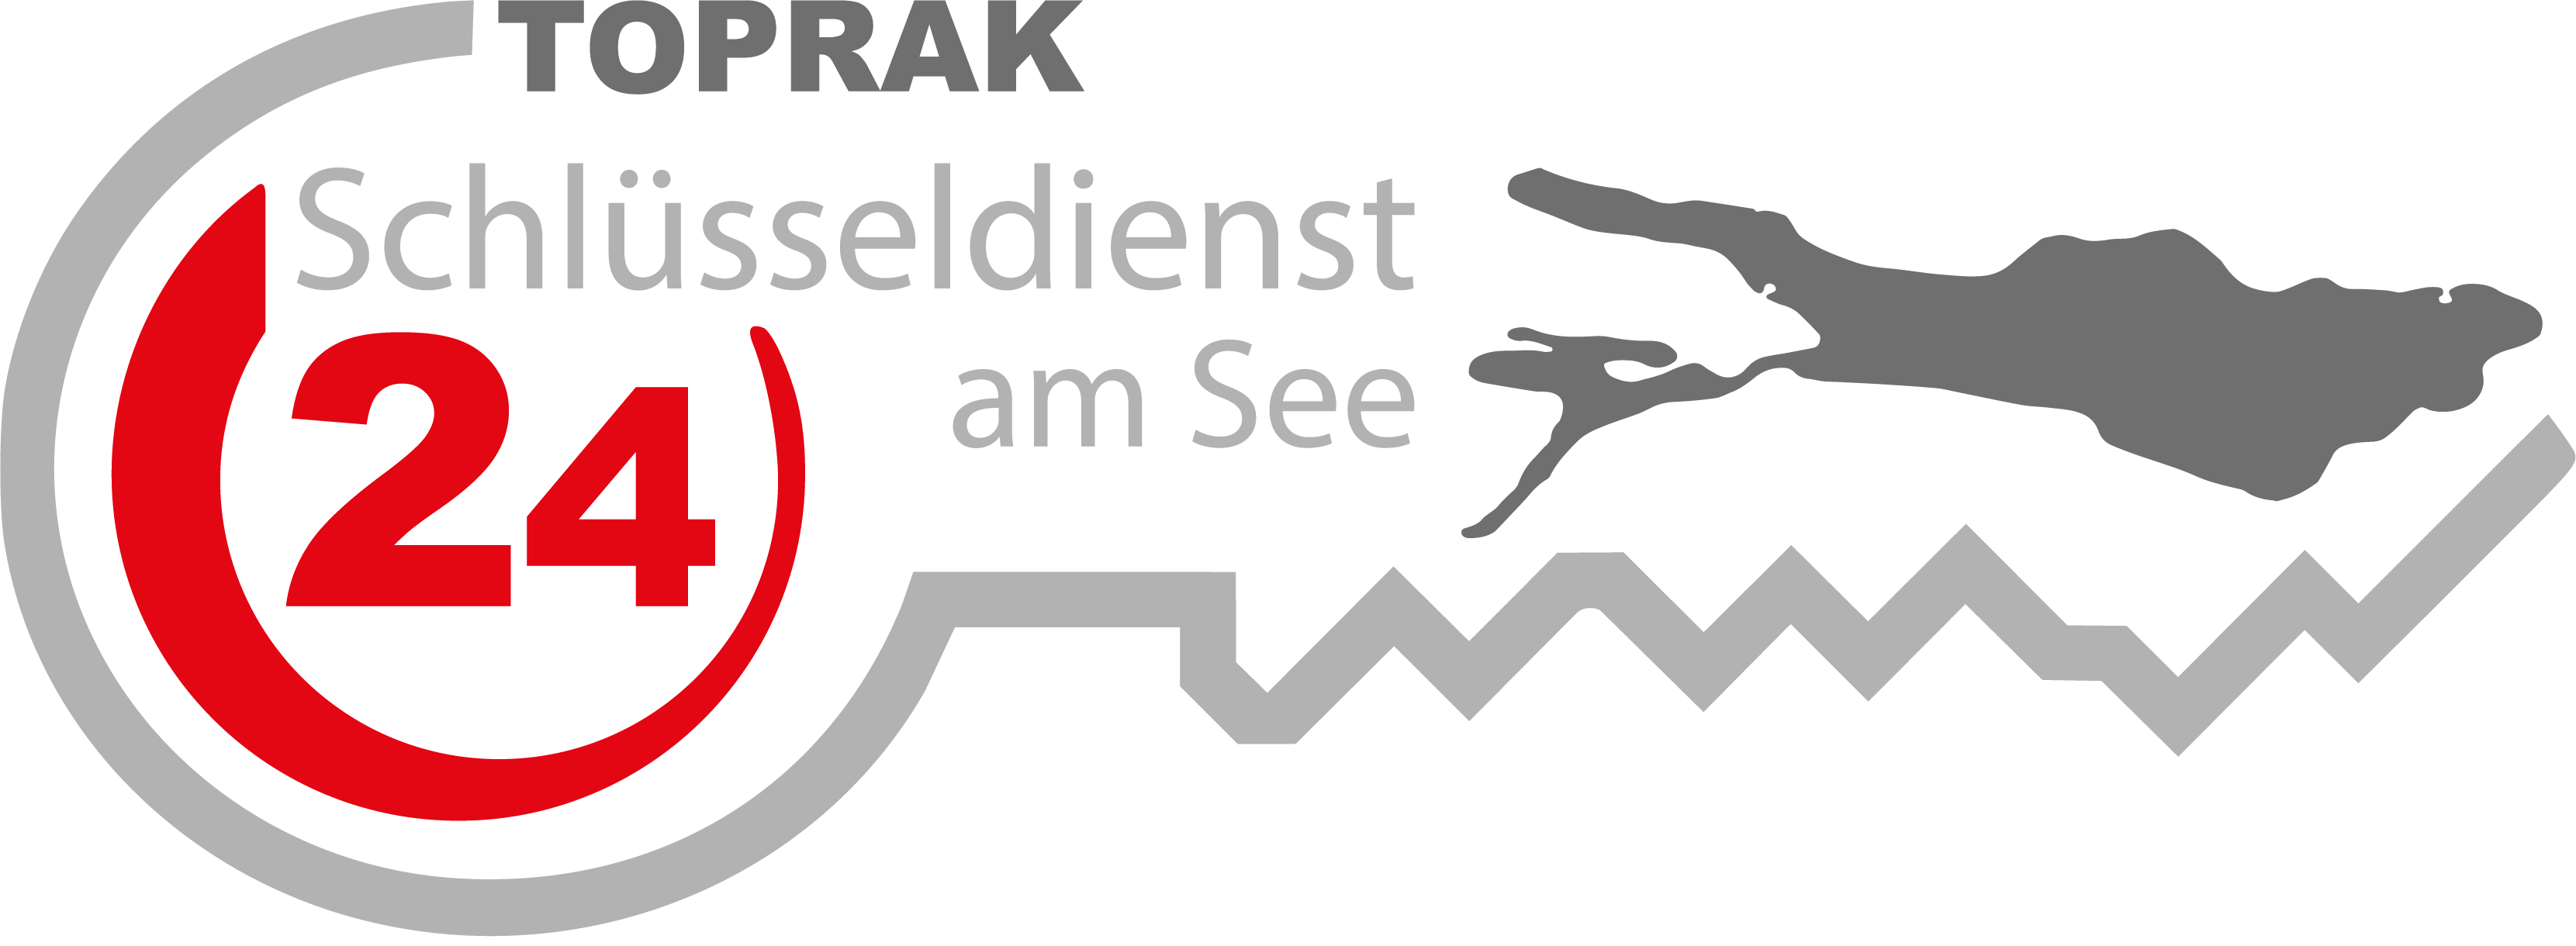 Toprak Schlüsseldienst Logo transparent